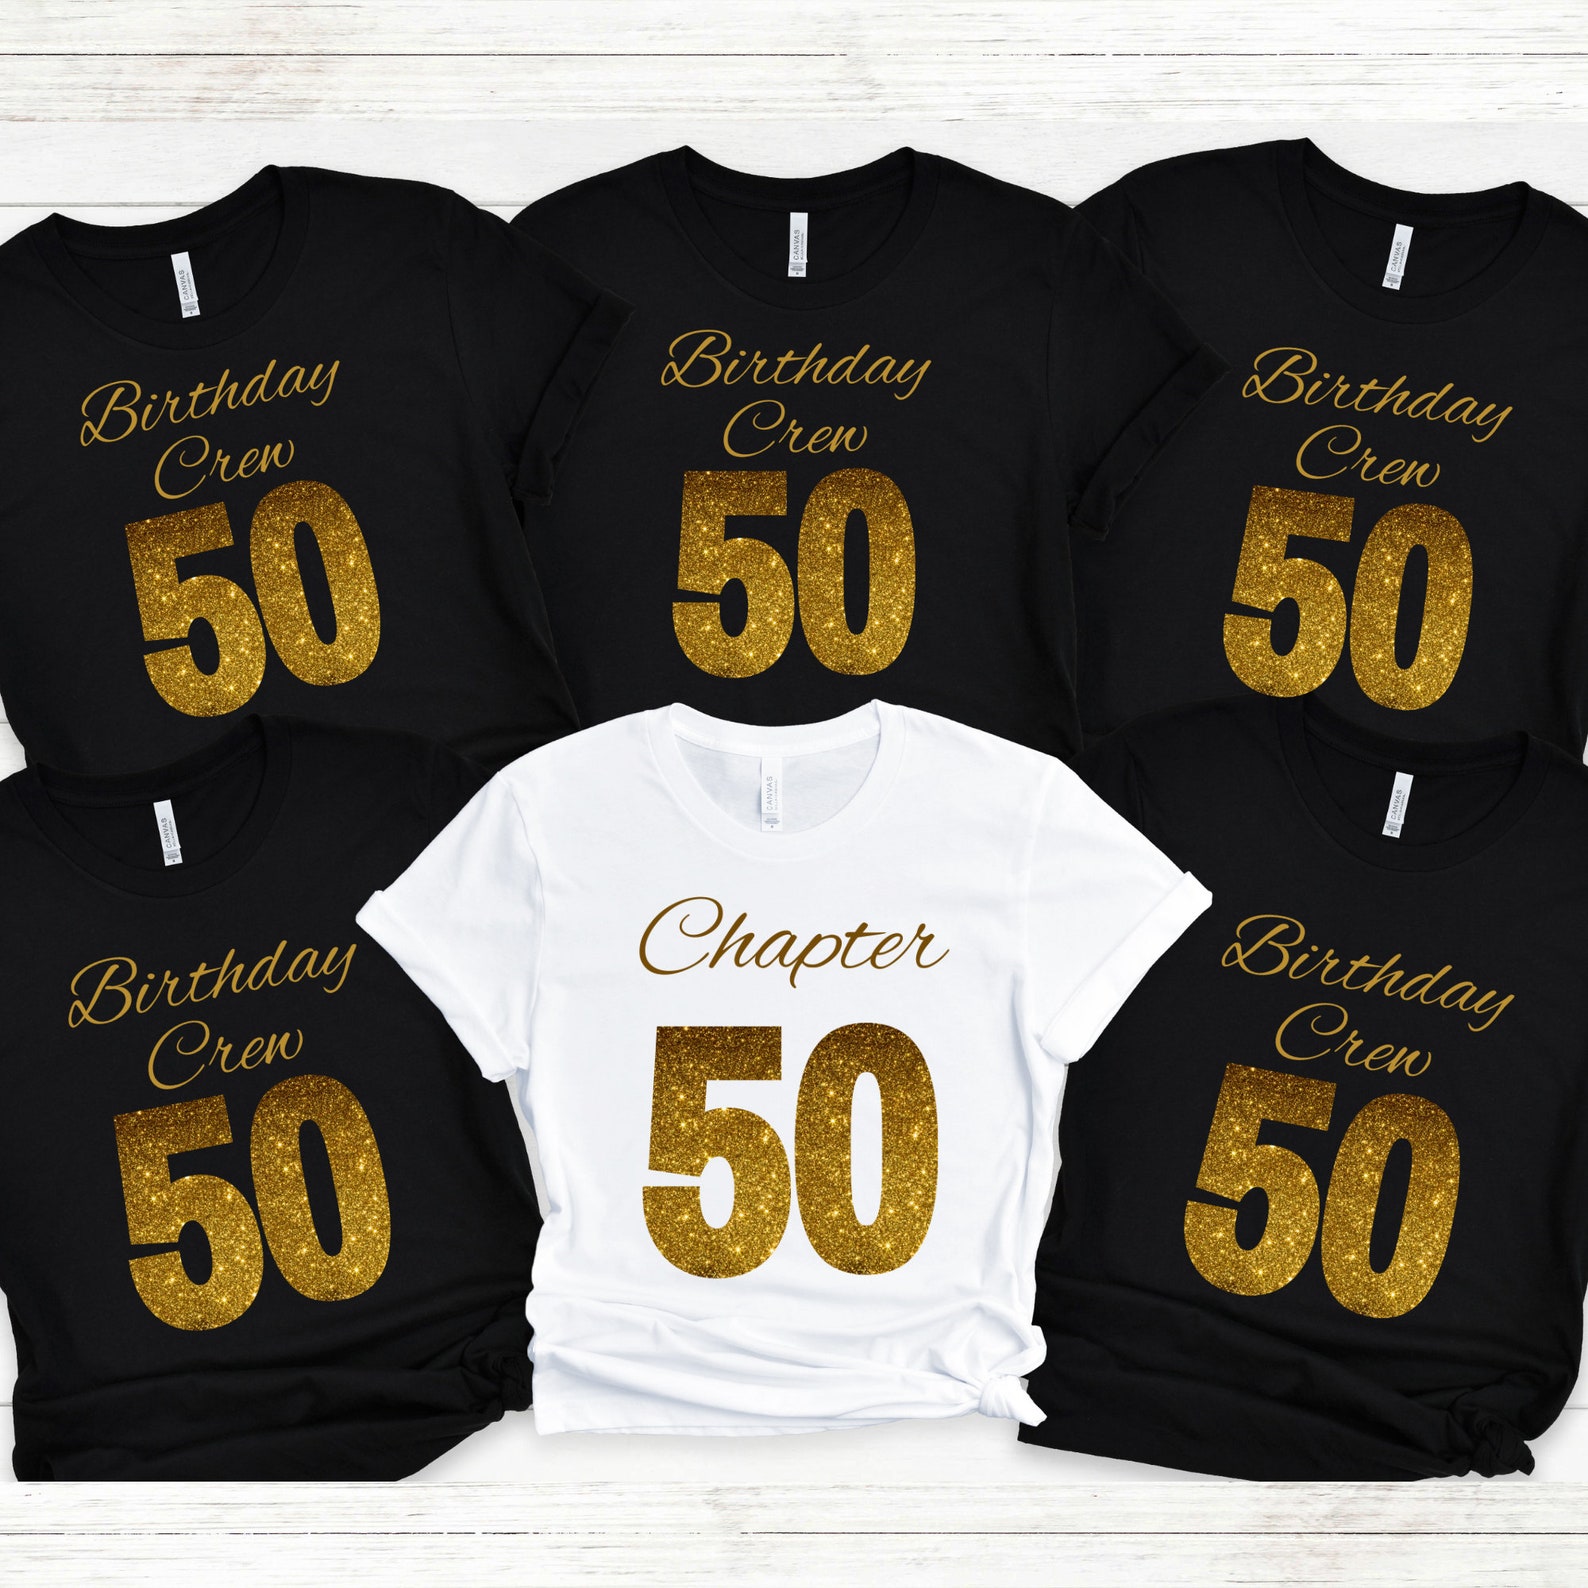 50th Birthday Group Shirts Birthday Crew Birthday Squad - Etsy